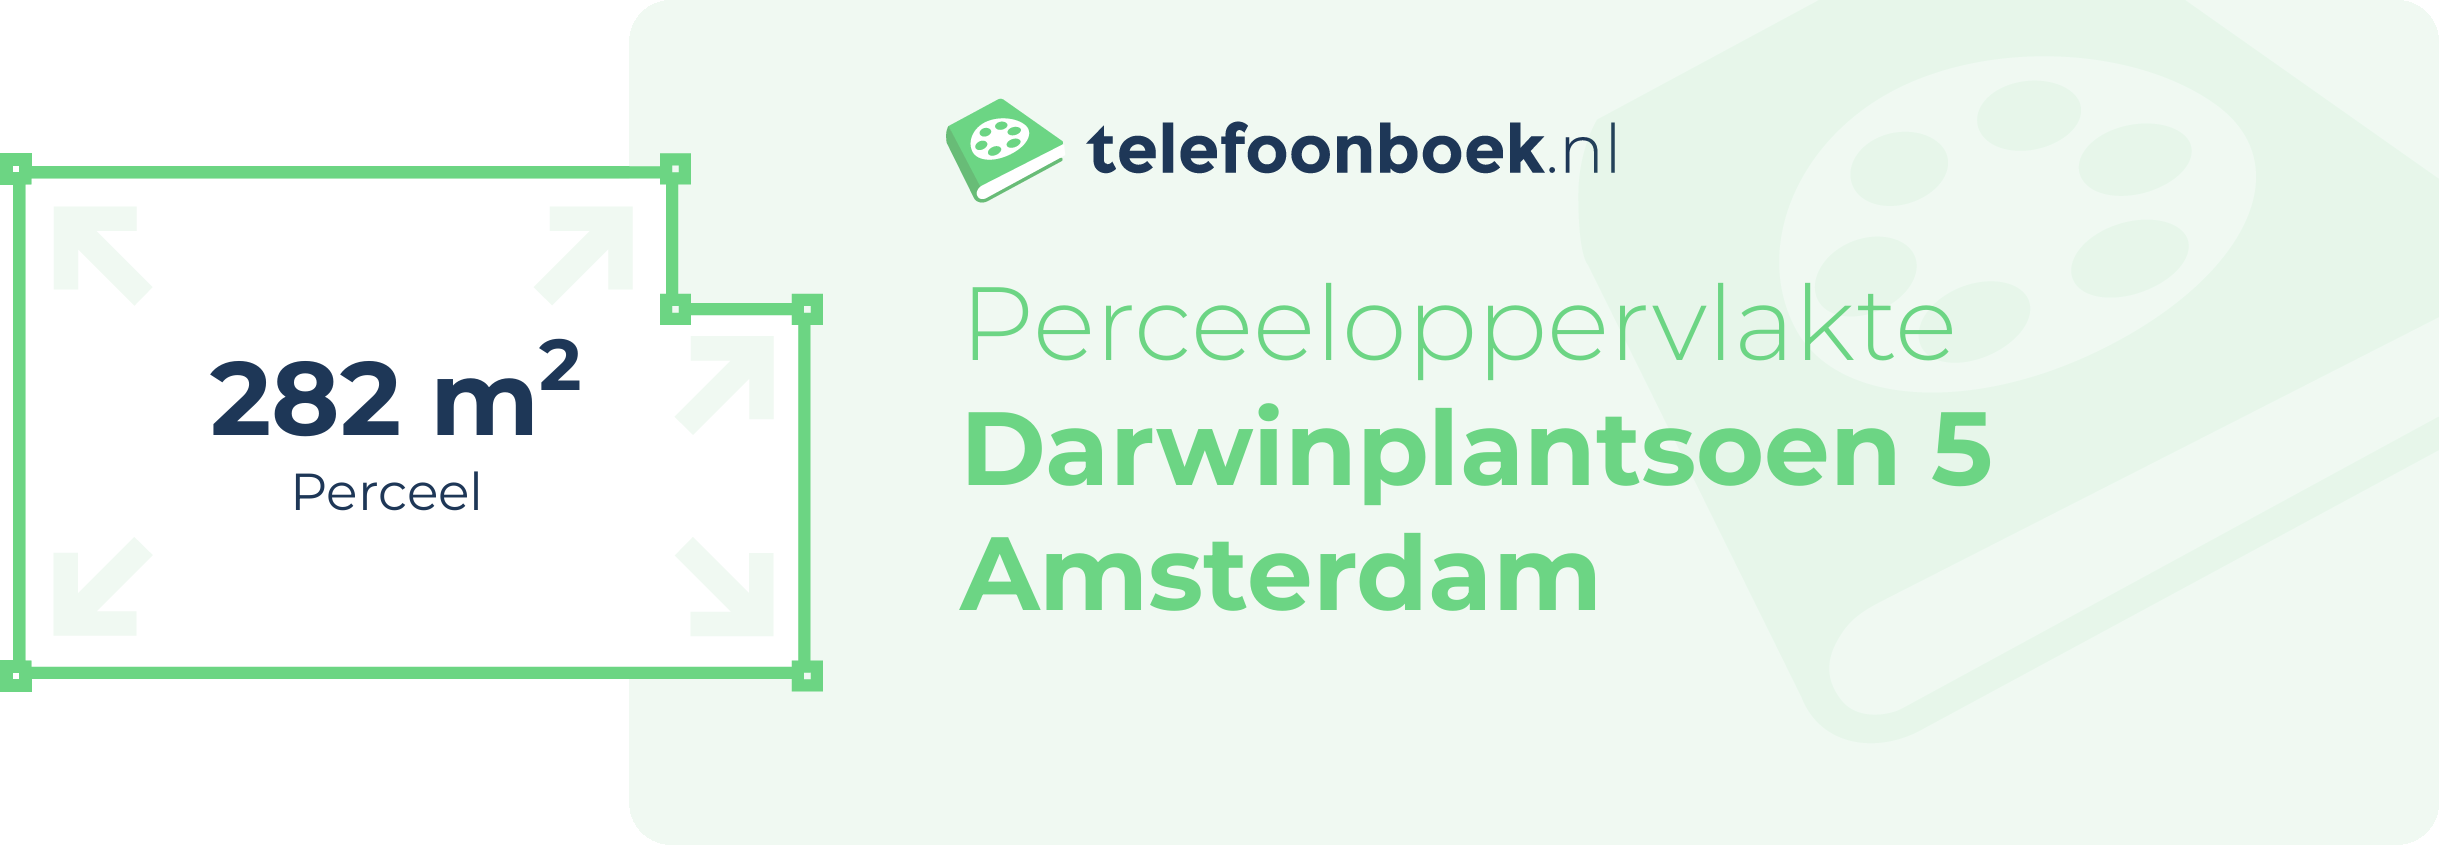 Perceeloppervlakte Darwinplantsoen 5 Amsterdam